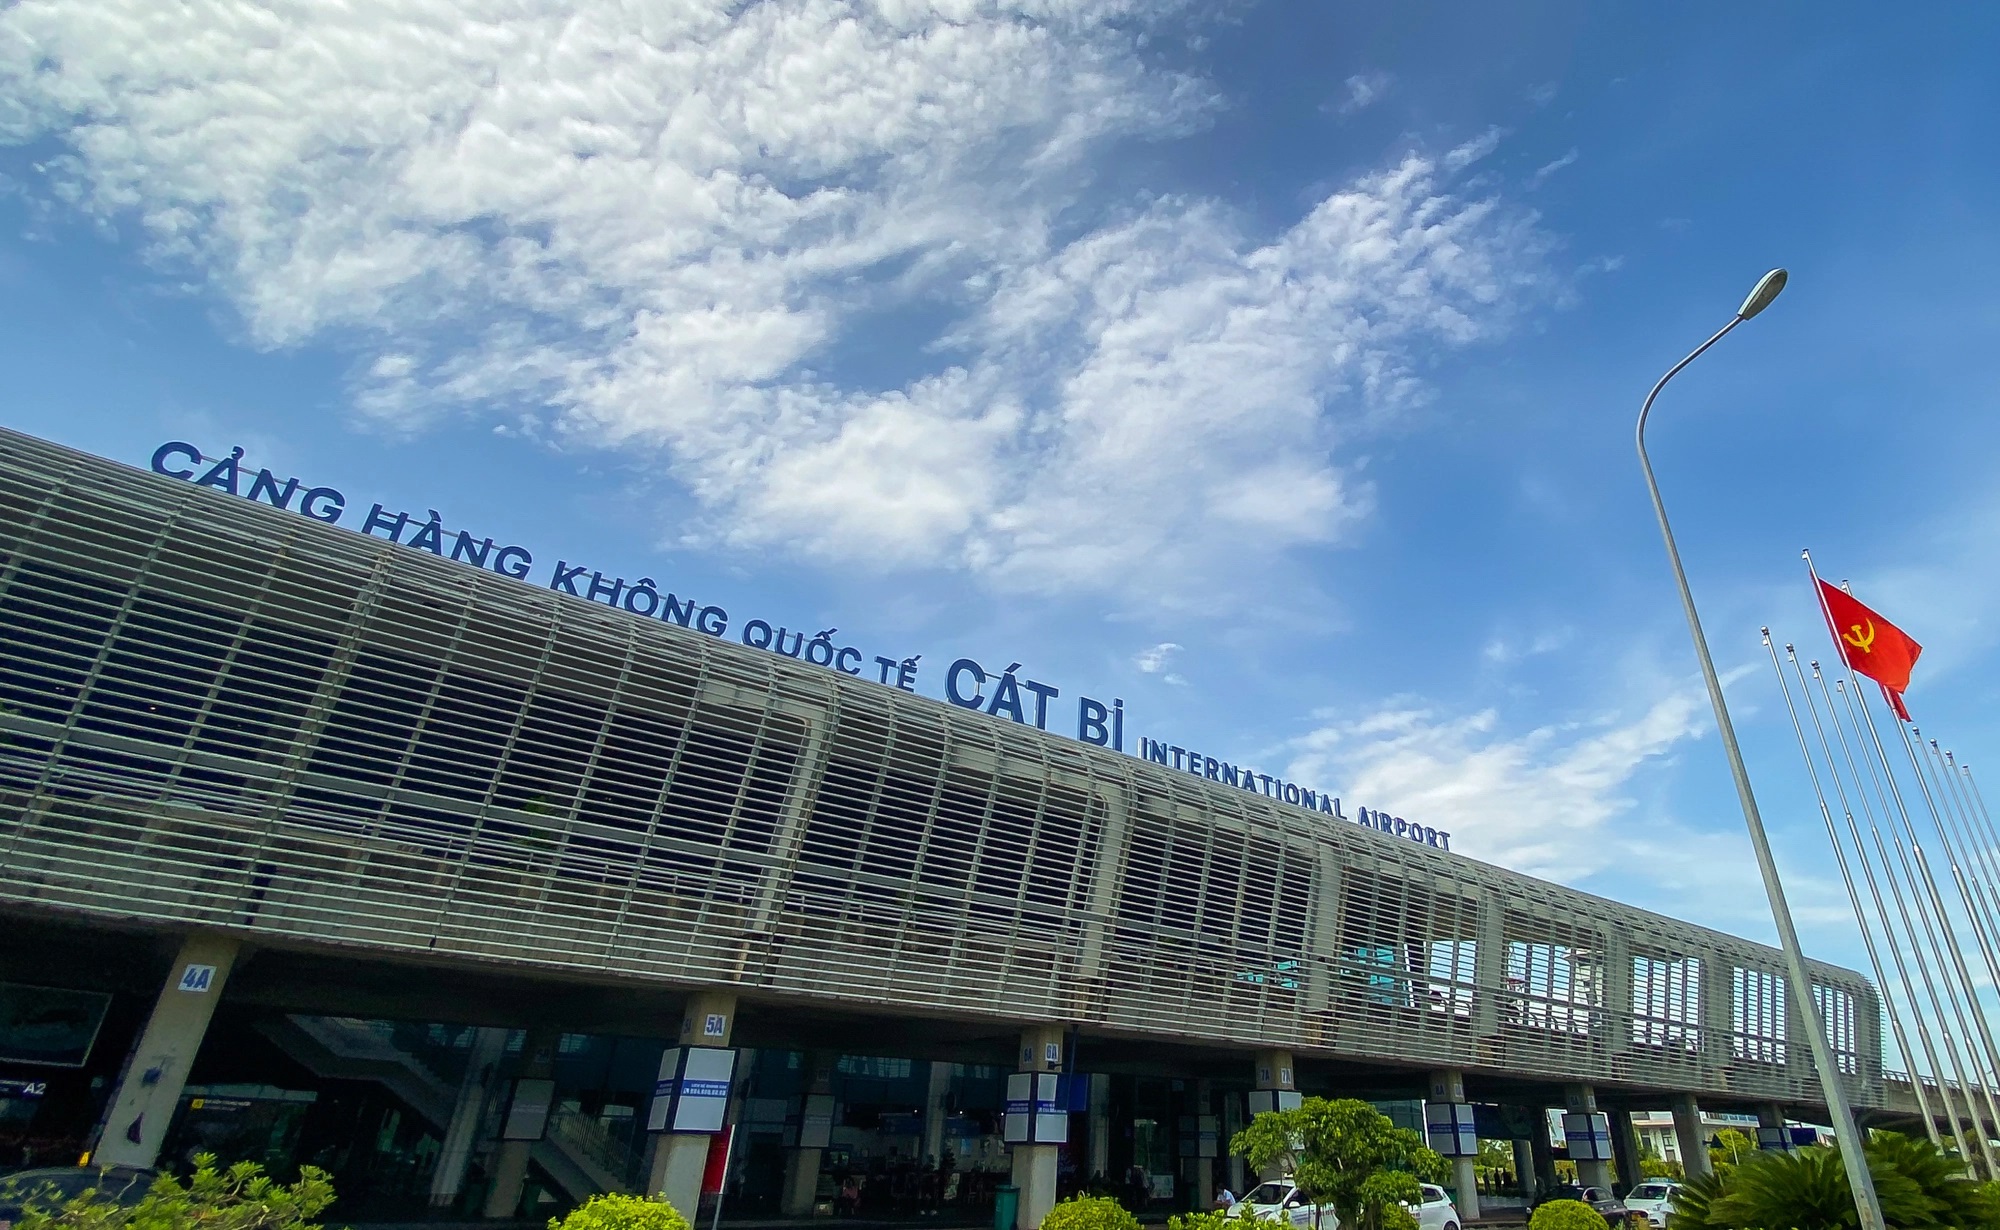 Tìm hiểu về sân bay Cát Bi - Cảng HKQT tại Hải Phòng